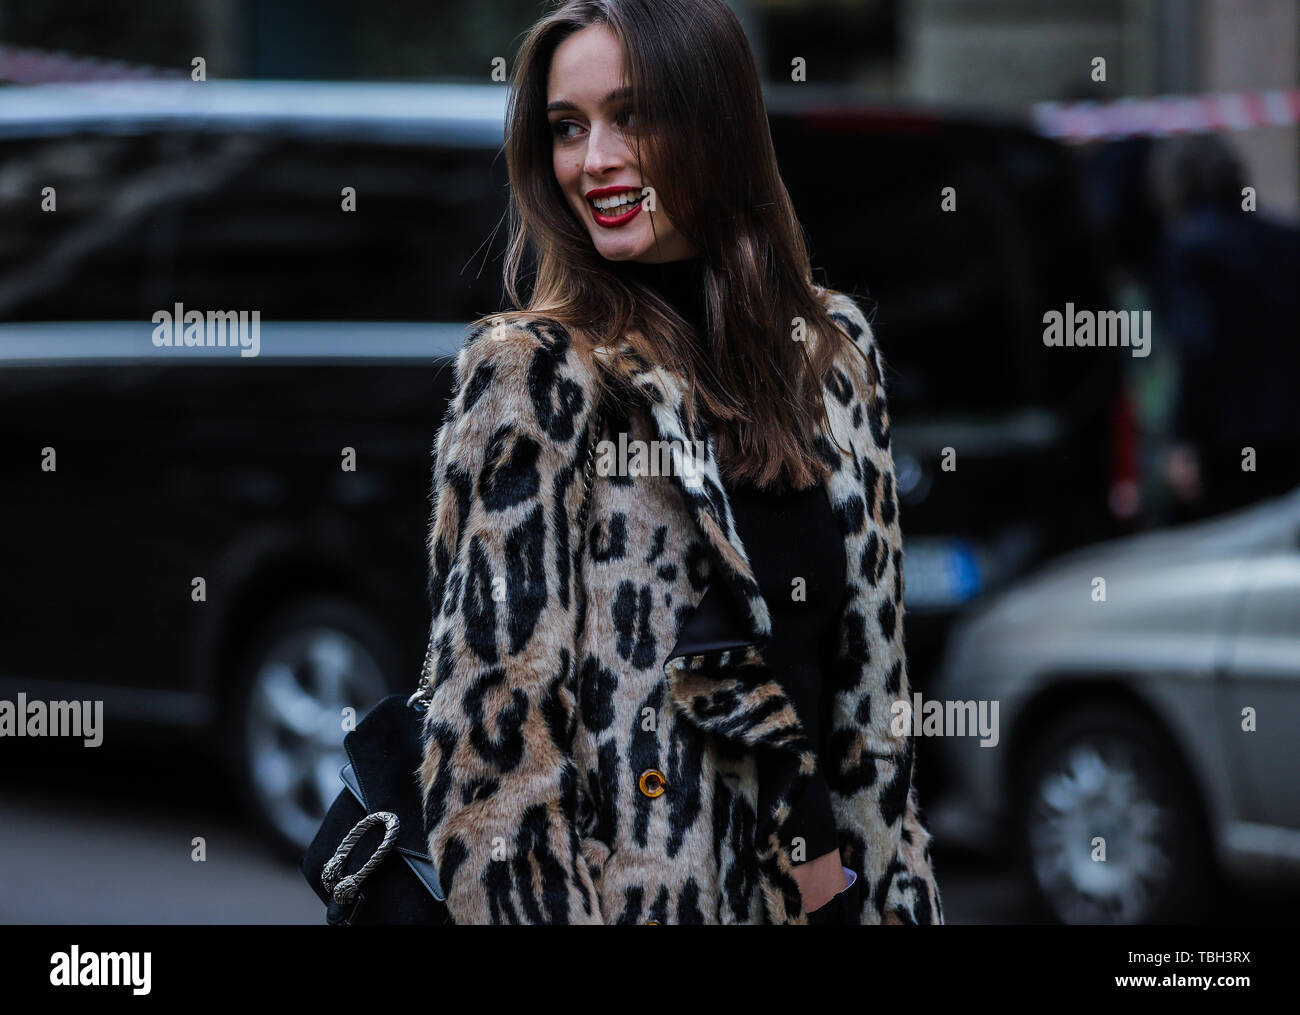 Mailand, Italien - 24. Februar 2019: Modell Chiara Corridori auf der Straße, die im Rahmen der Mailänder Modewoche. (Foto von Mauro Del Signore/Pacific Press) Stockfoto